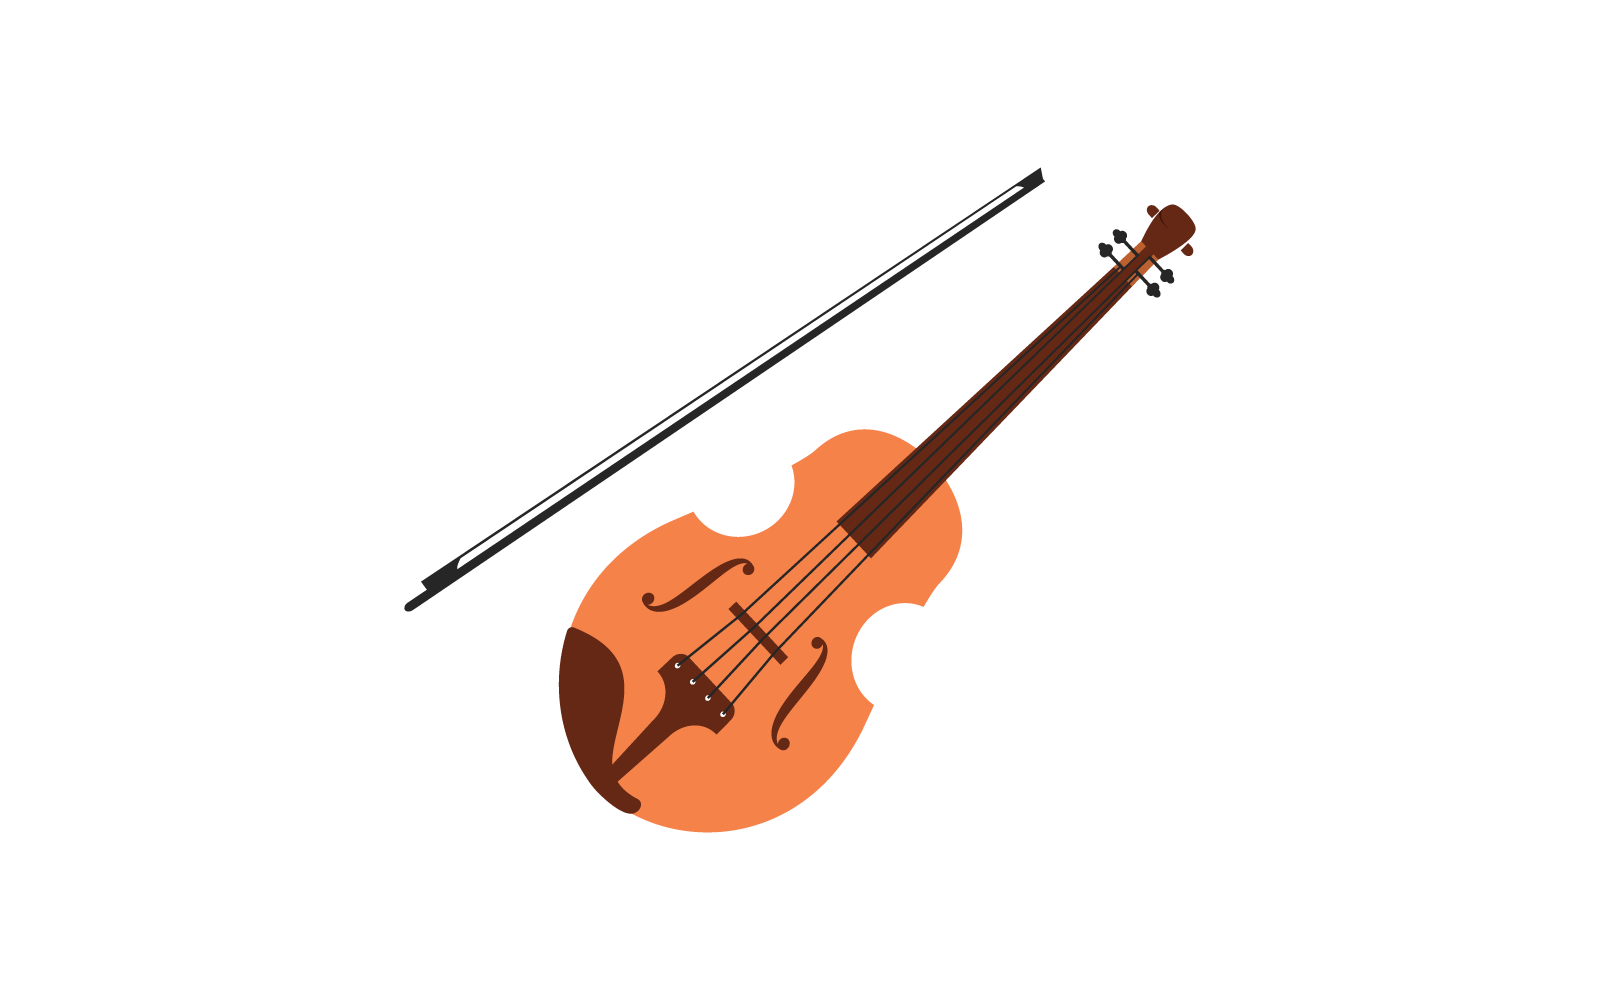 Violin illustration vector flat design